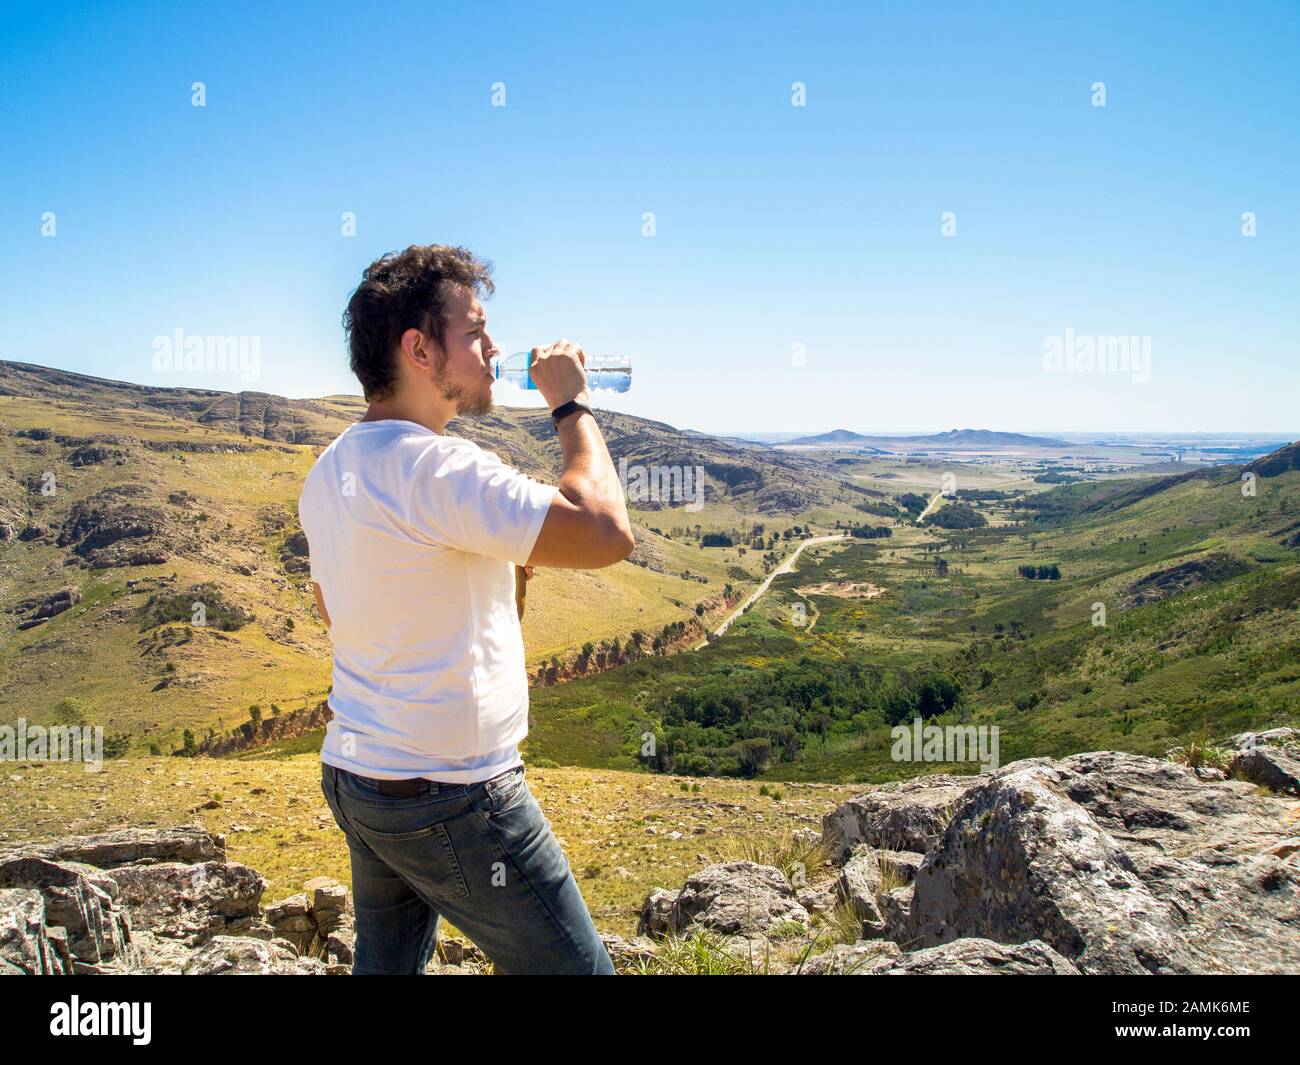 Young hiker drinking water at Cerro Bahía Blanca, Sierra de la Ventana, Buenos Aires, Argentina. Stock Photo